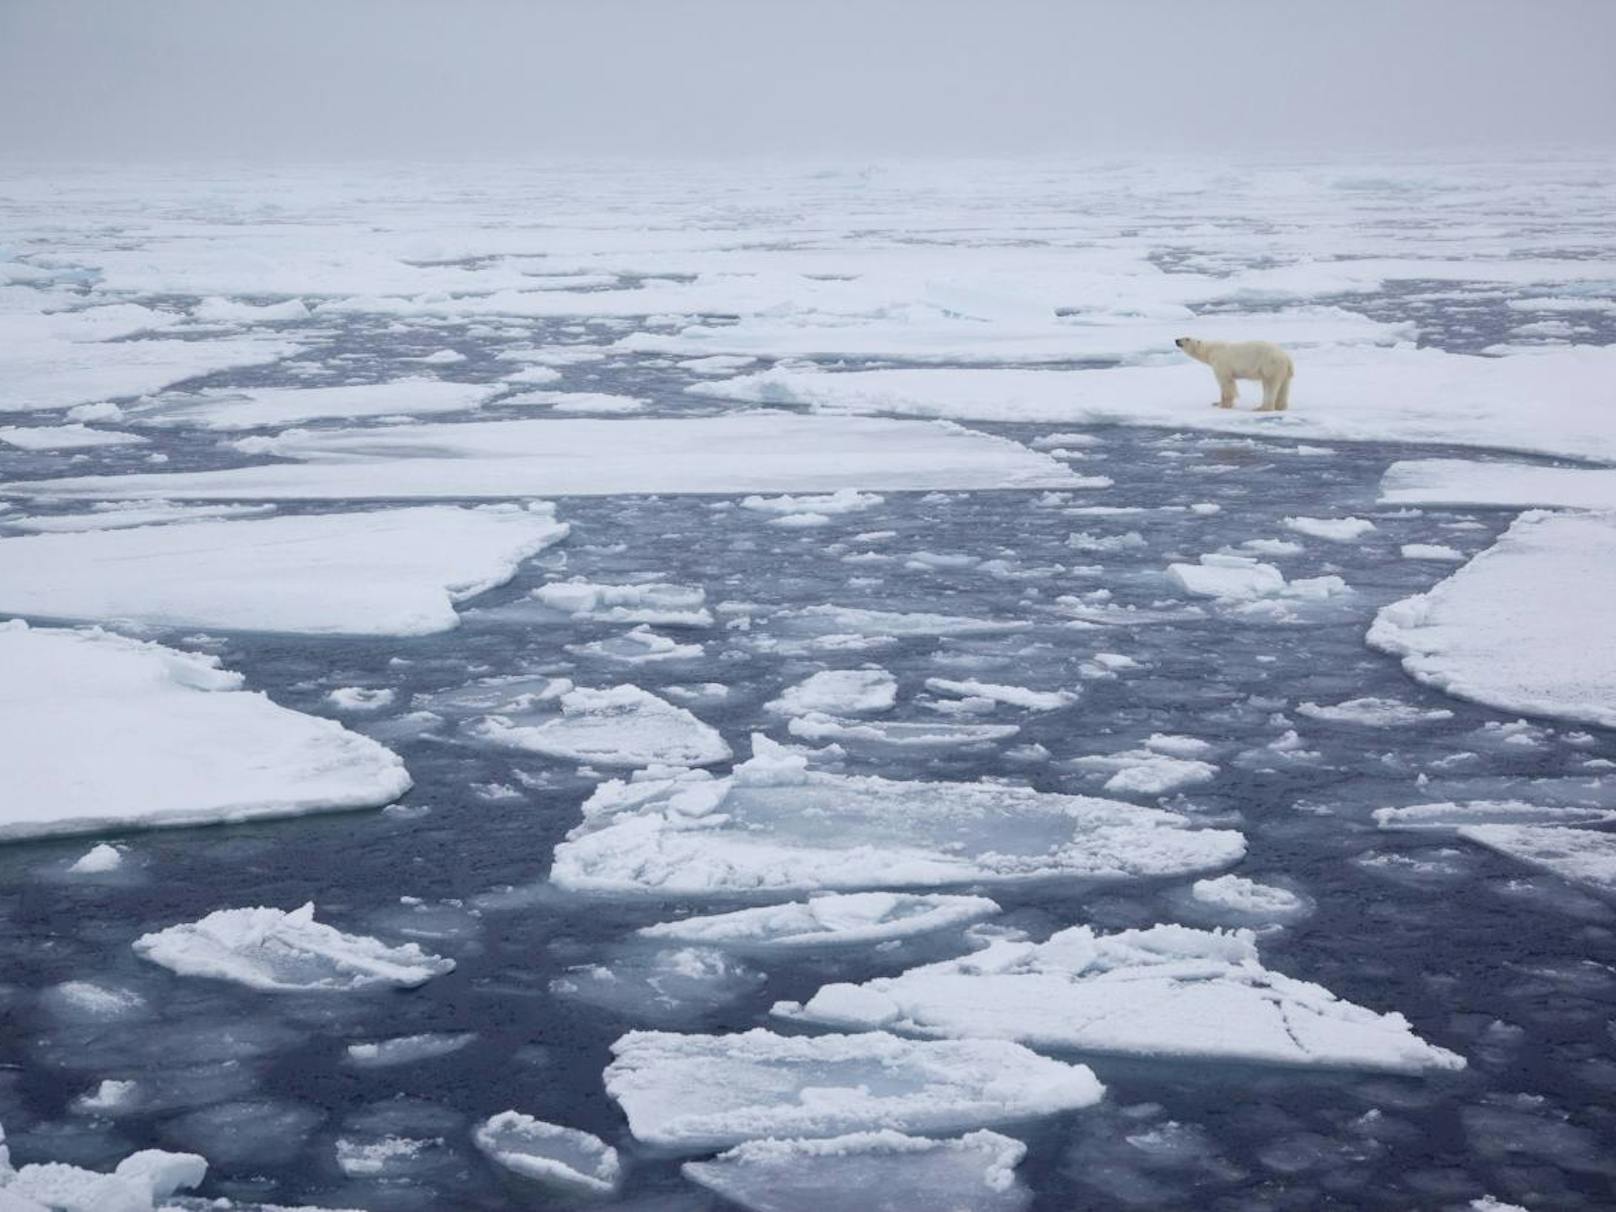 Einer aktuellen Studie zufolge stiegen die Temperaturen in der nördlichen Polarregion in den vergangenen Jahrzehnten noch rasanter als angenommen – mit verheerenden Folgen.